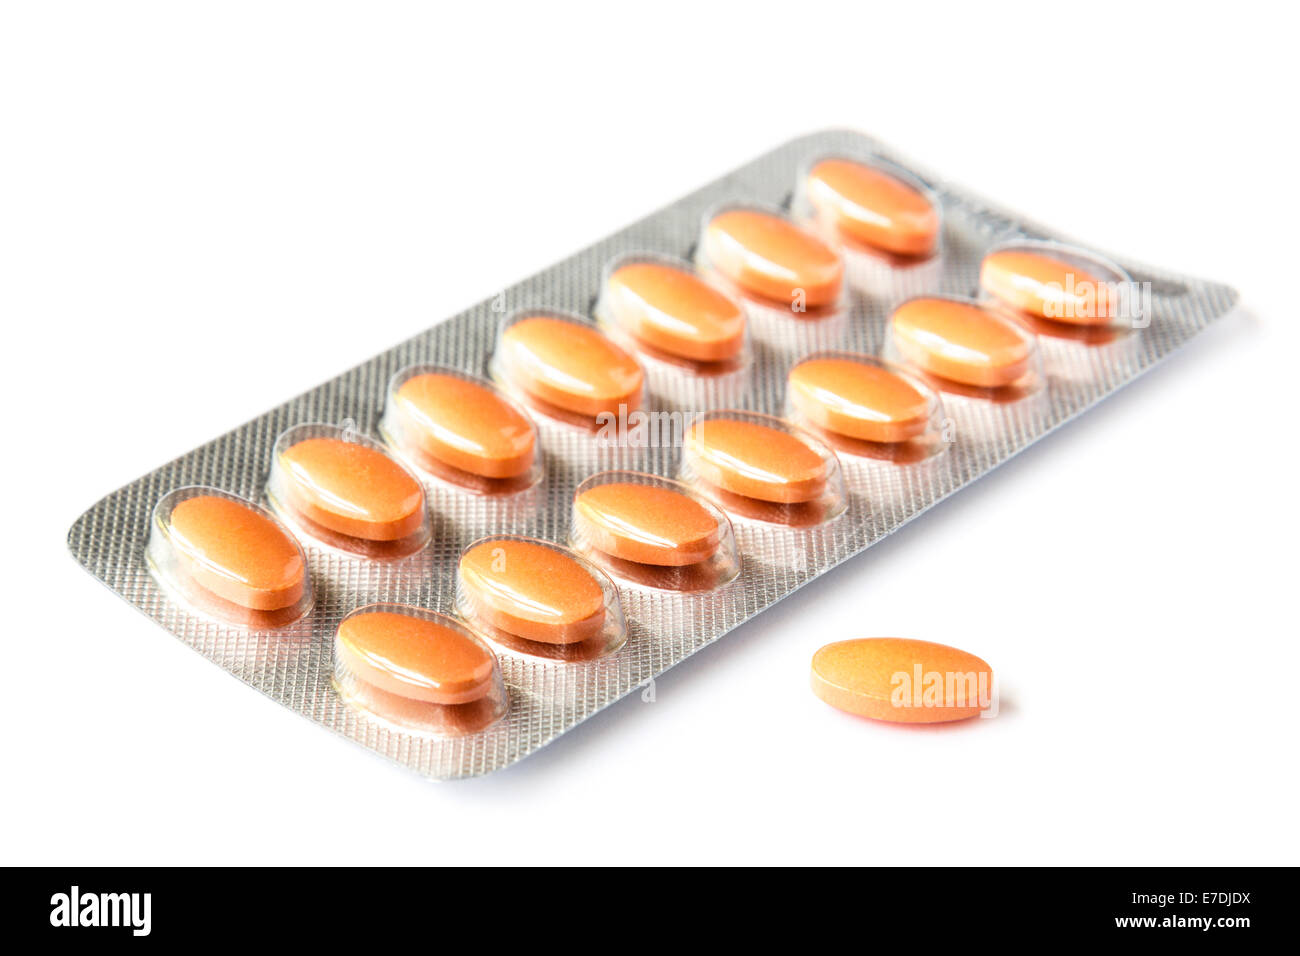 Simvastatin 40 mg comprimés de statine médicament prescrit pour traiter le cholestérol élevé dans un emballage de comprimés sans marque de blister isolé sur blanc Banque D'Images